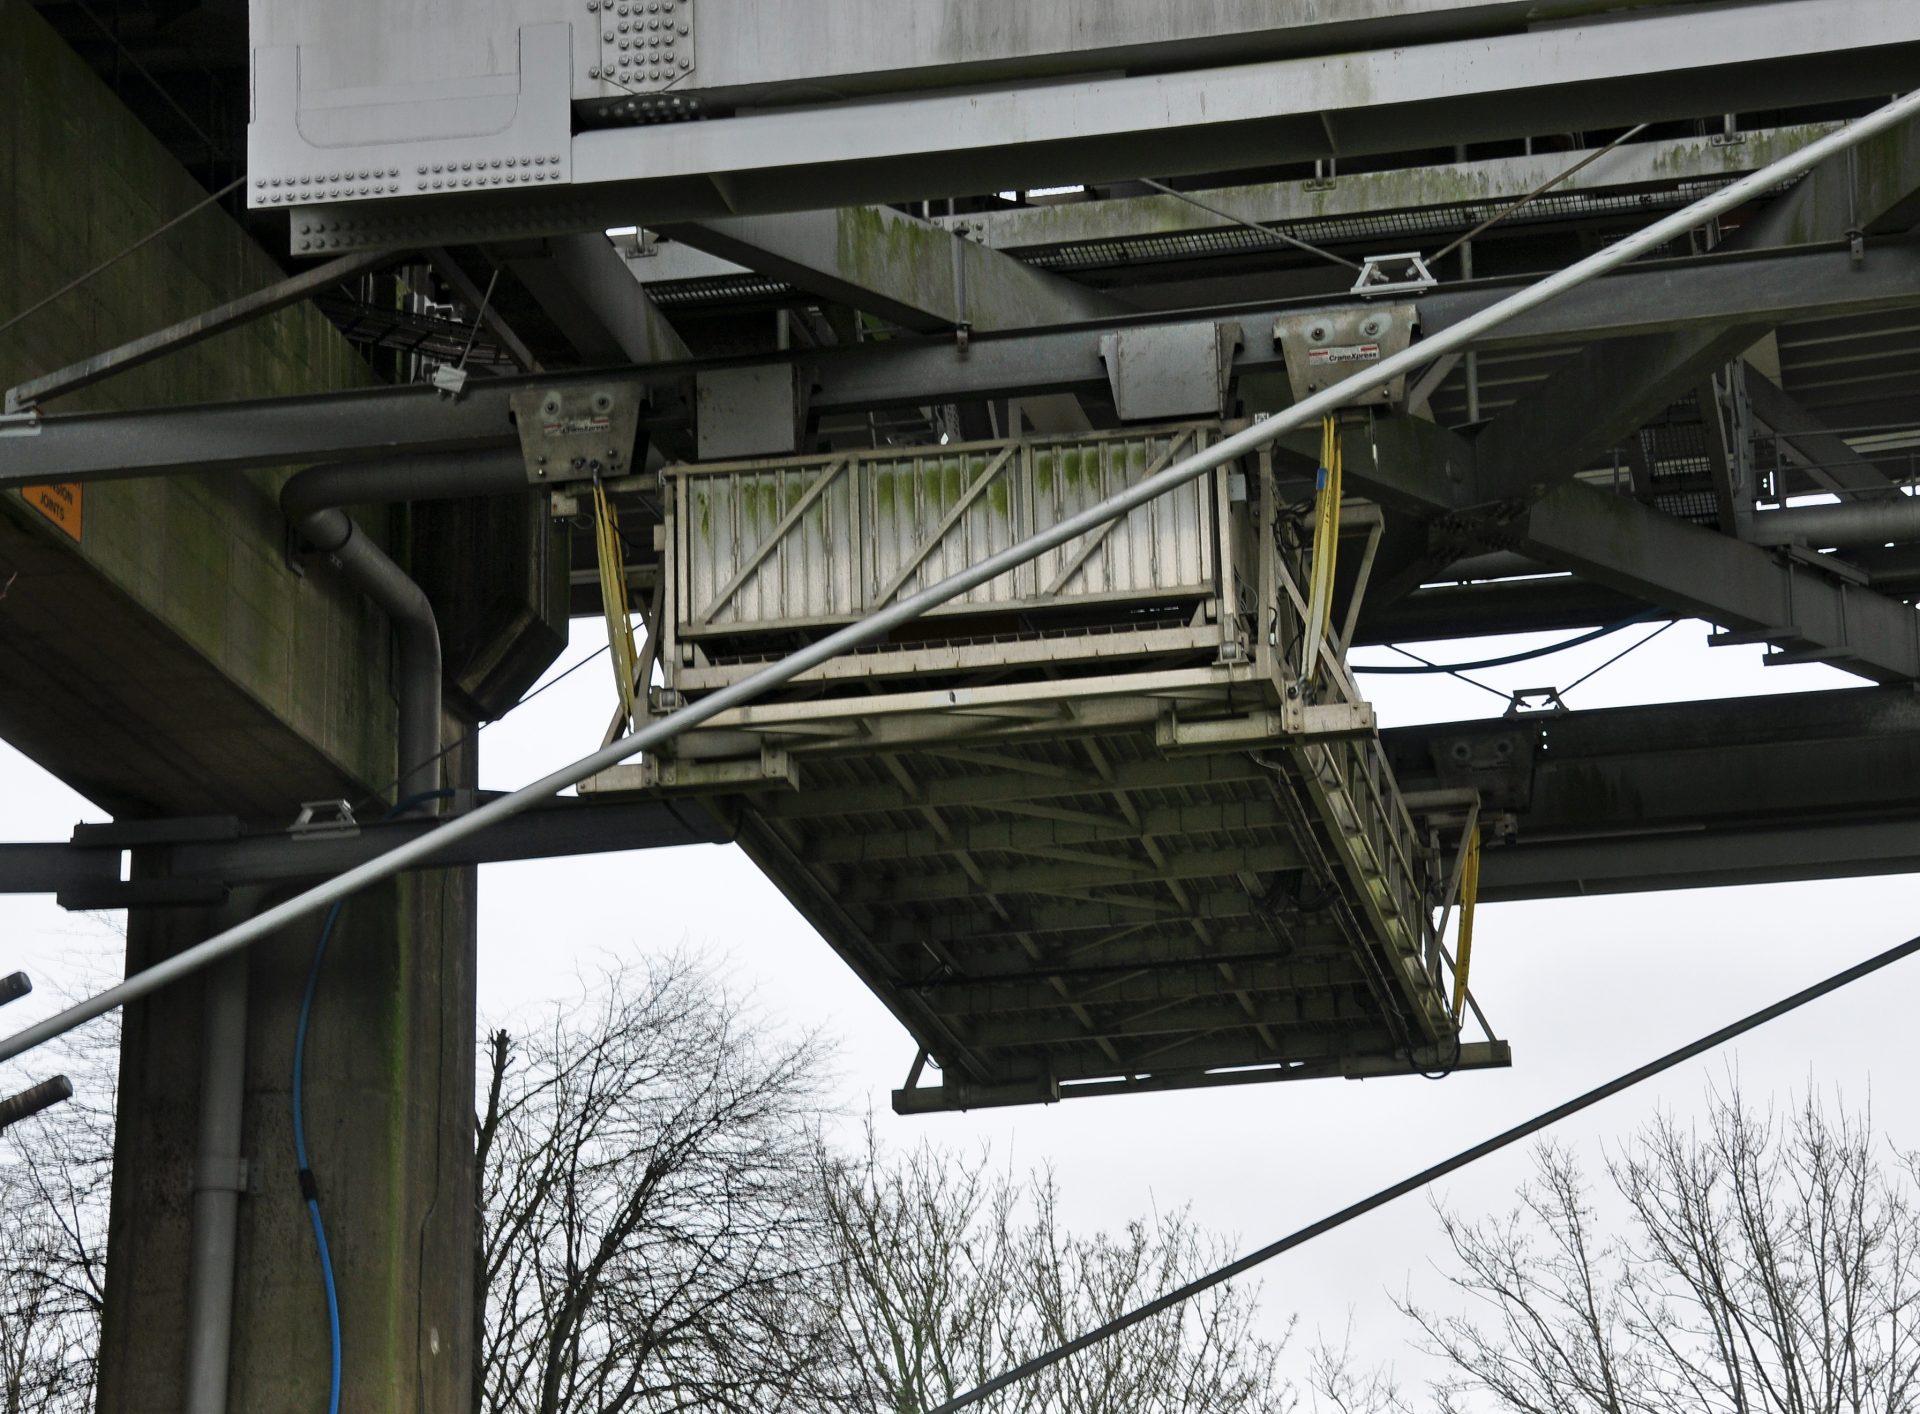 Inspection Platform Under Concrete Bridge